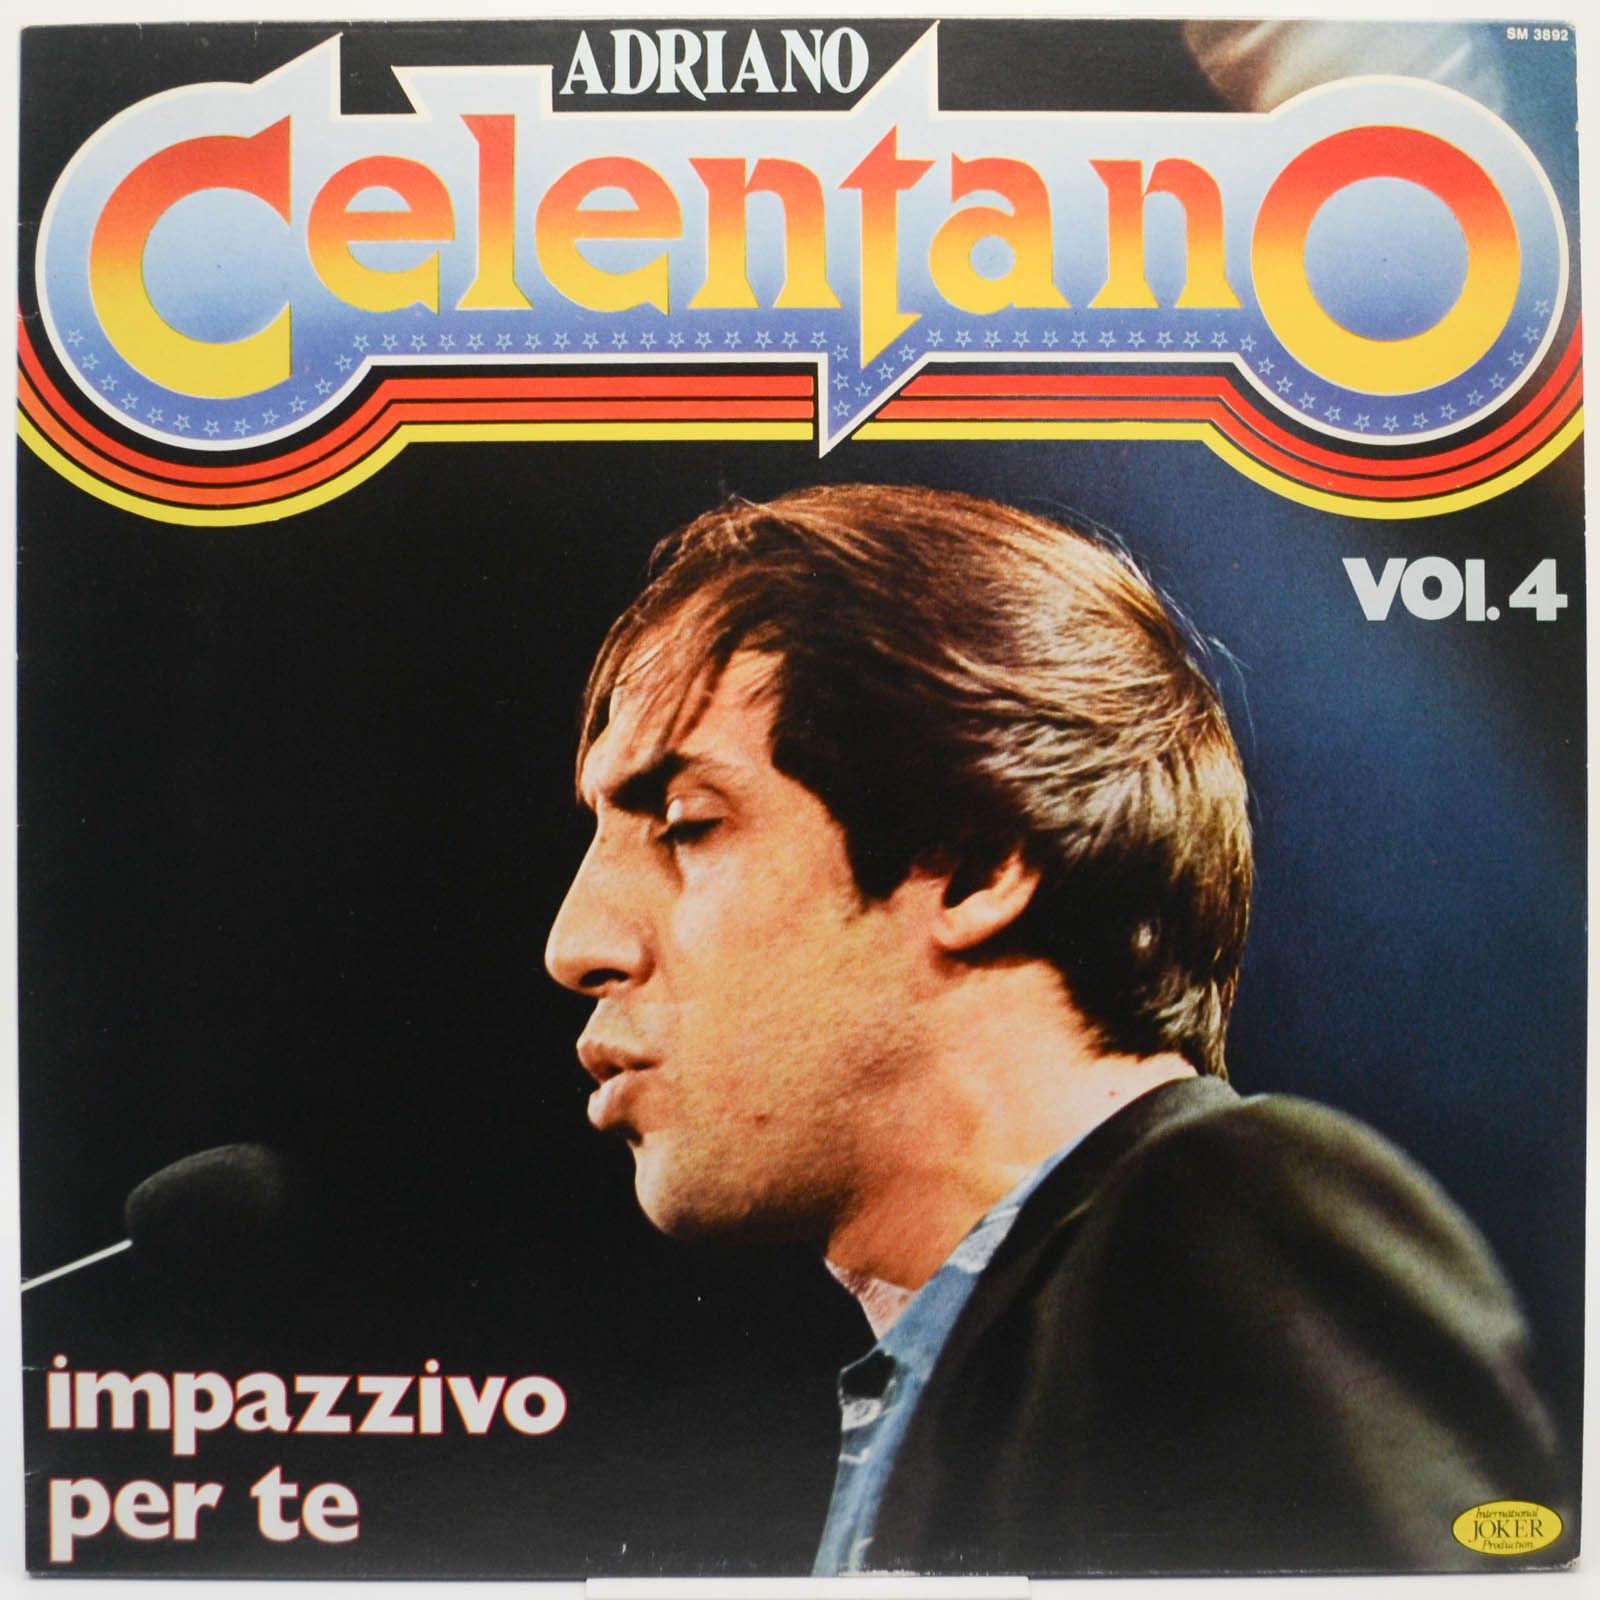 Adriano Celentano — Vol. 4 - Impazzivo Per Te (Italy), 1981